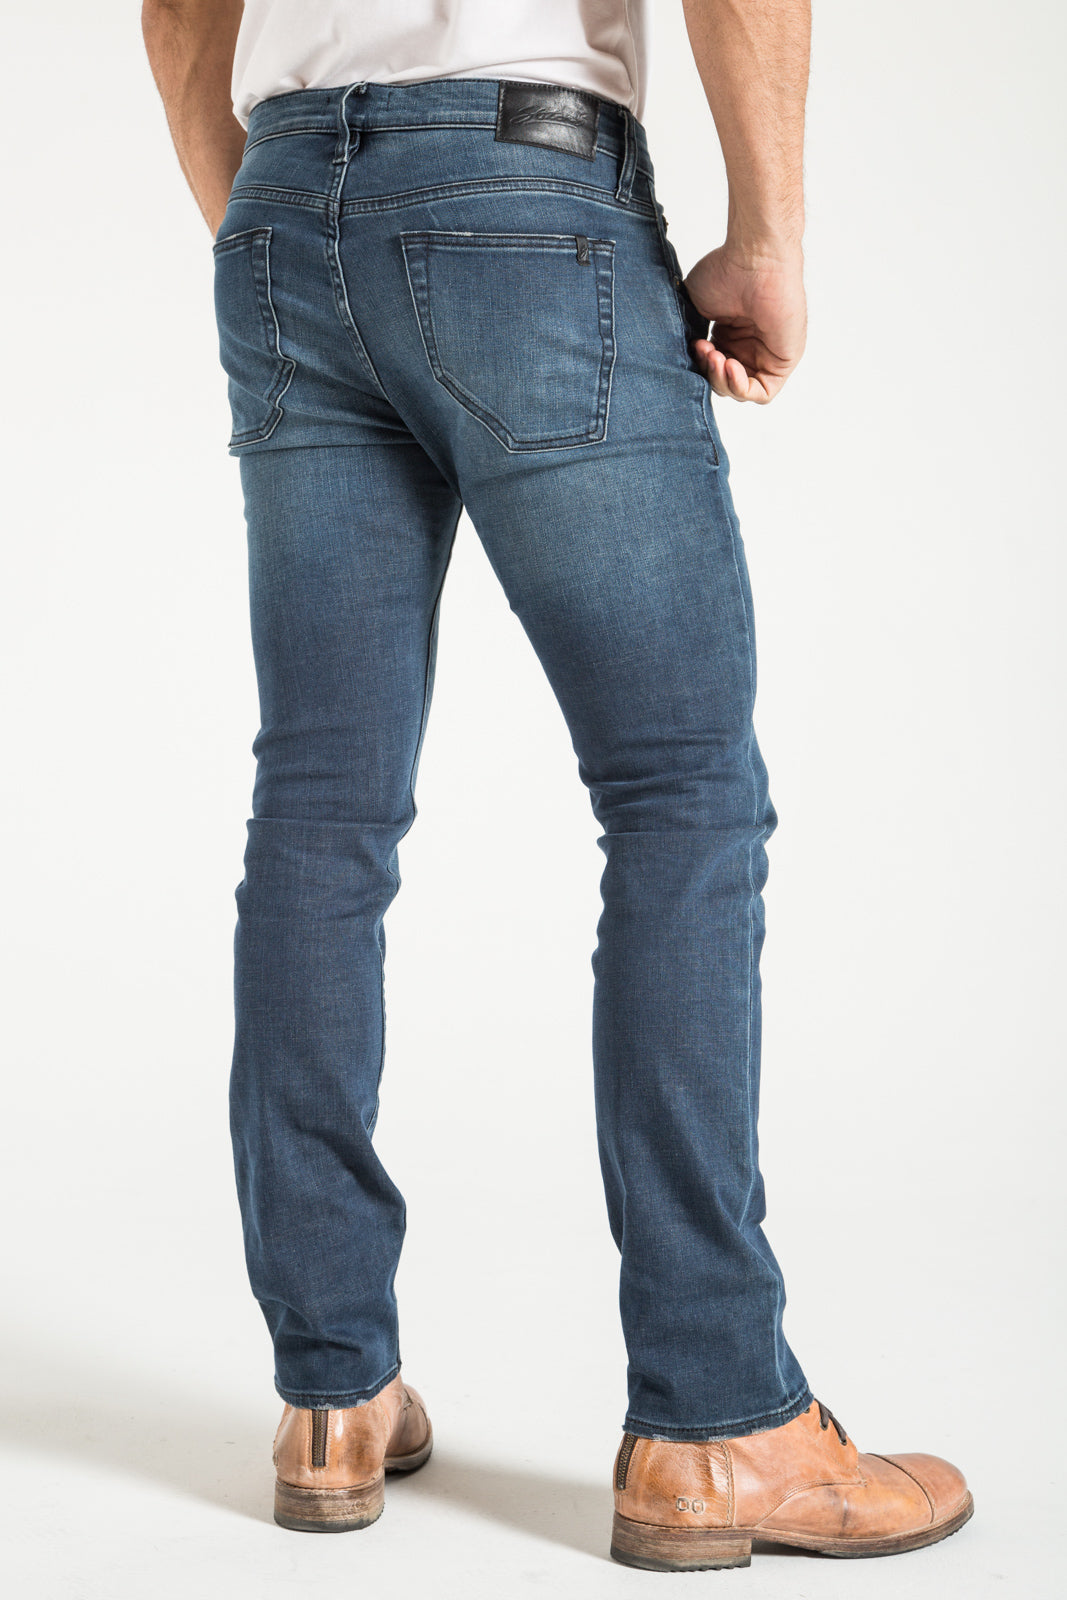 BARFLY SLIM IN HARLEY DENIM | STITCHS JEANS – Stitch's Jeans